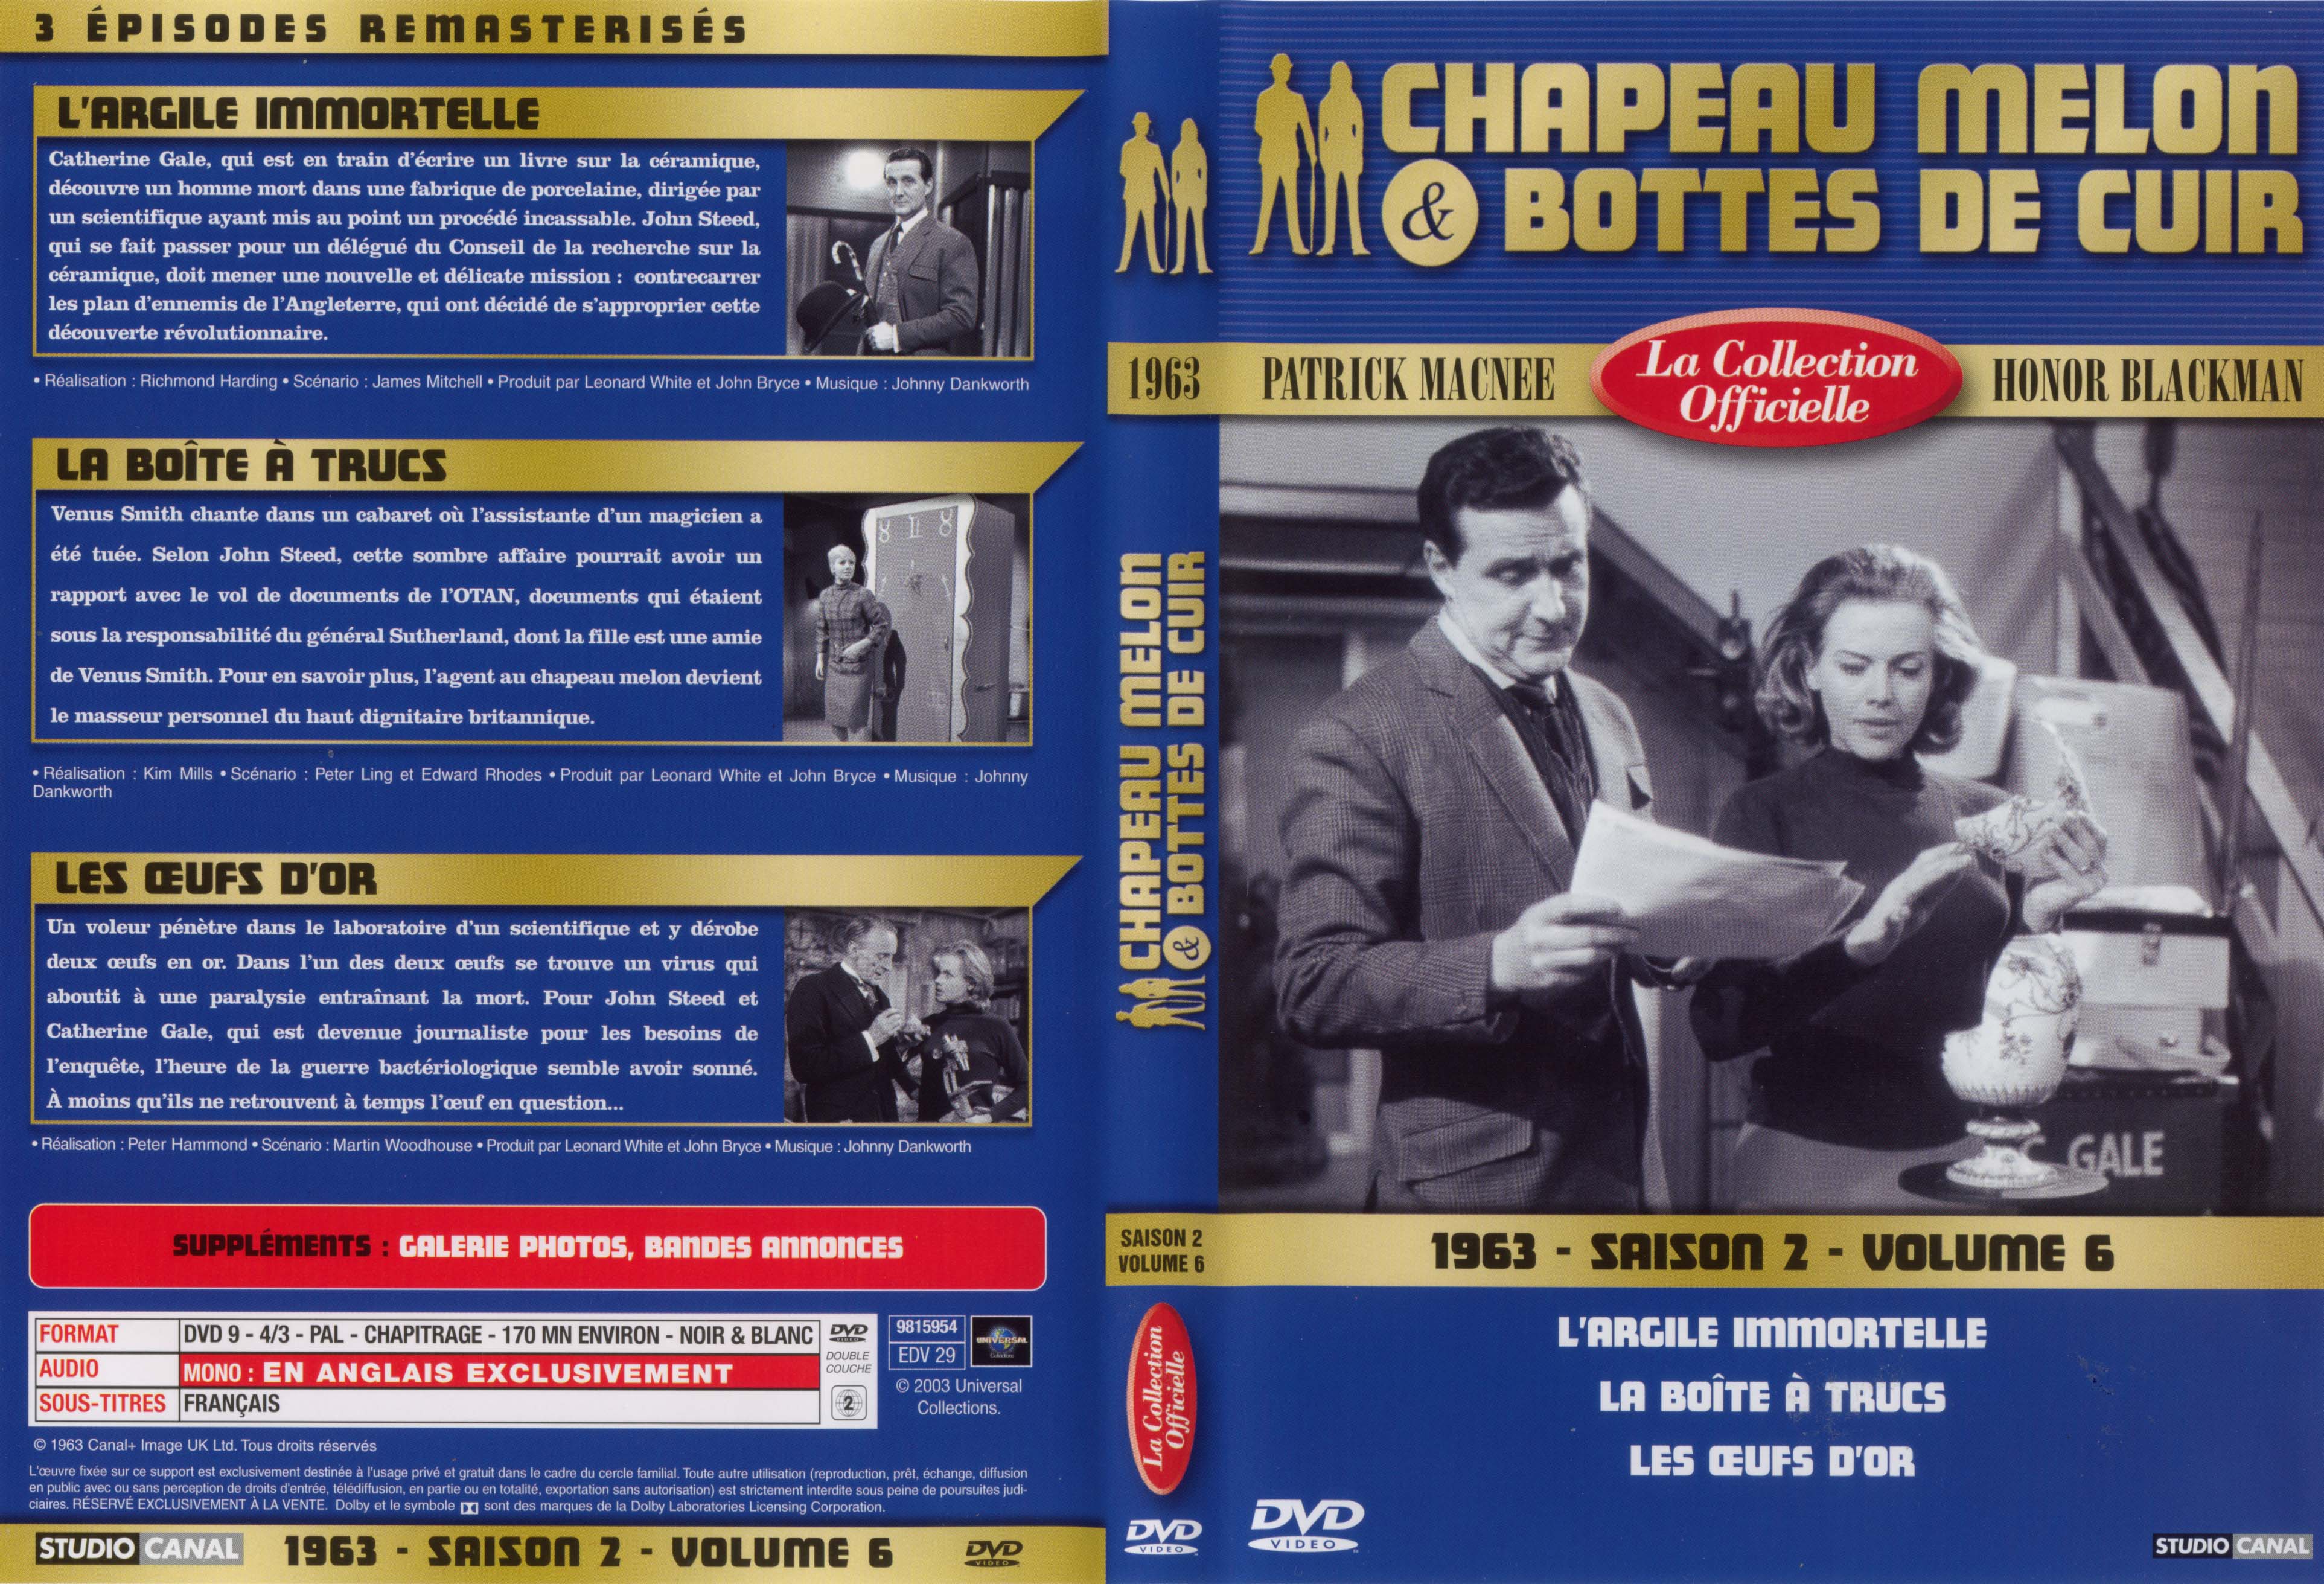 Jaquette DVD Chapeau melon et bottes de cuir 1963 saison 2 vol 6